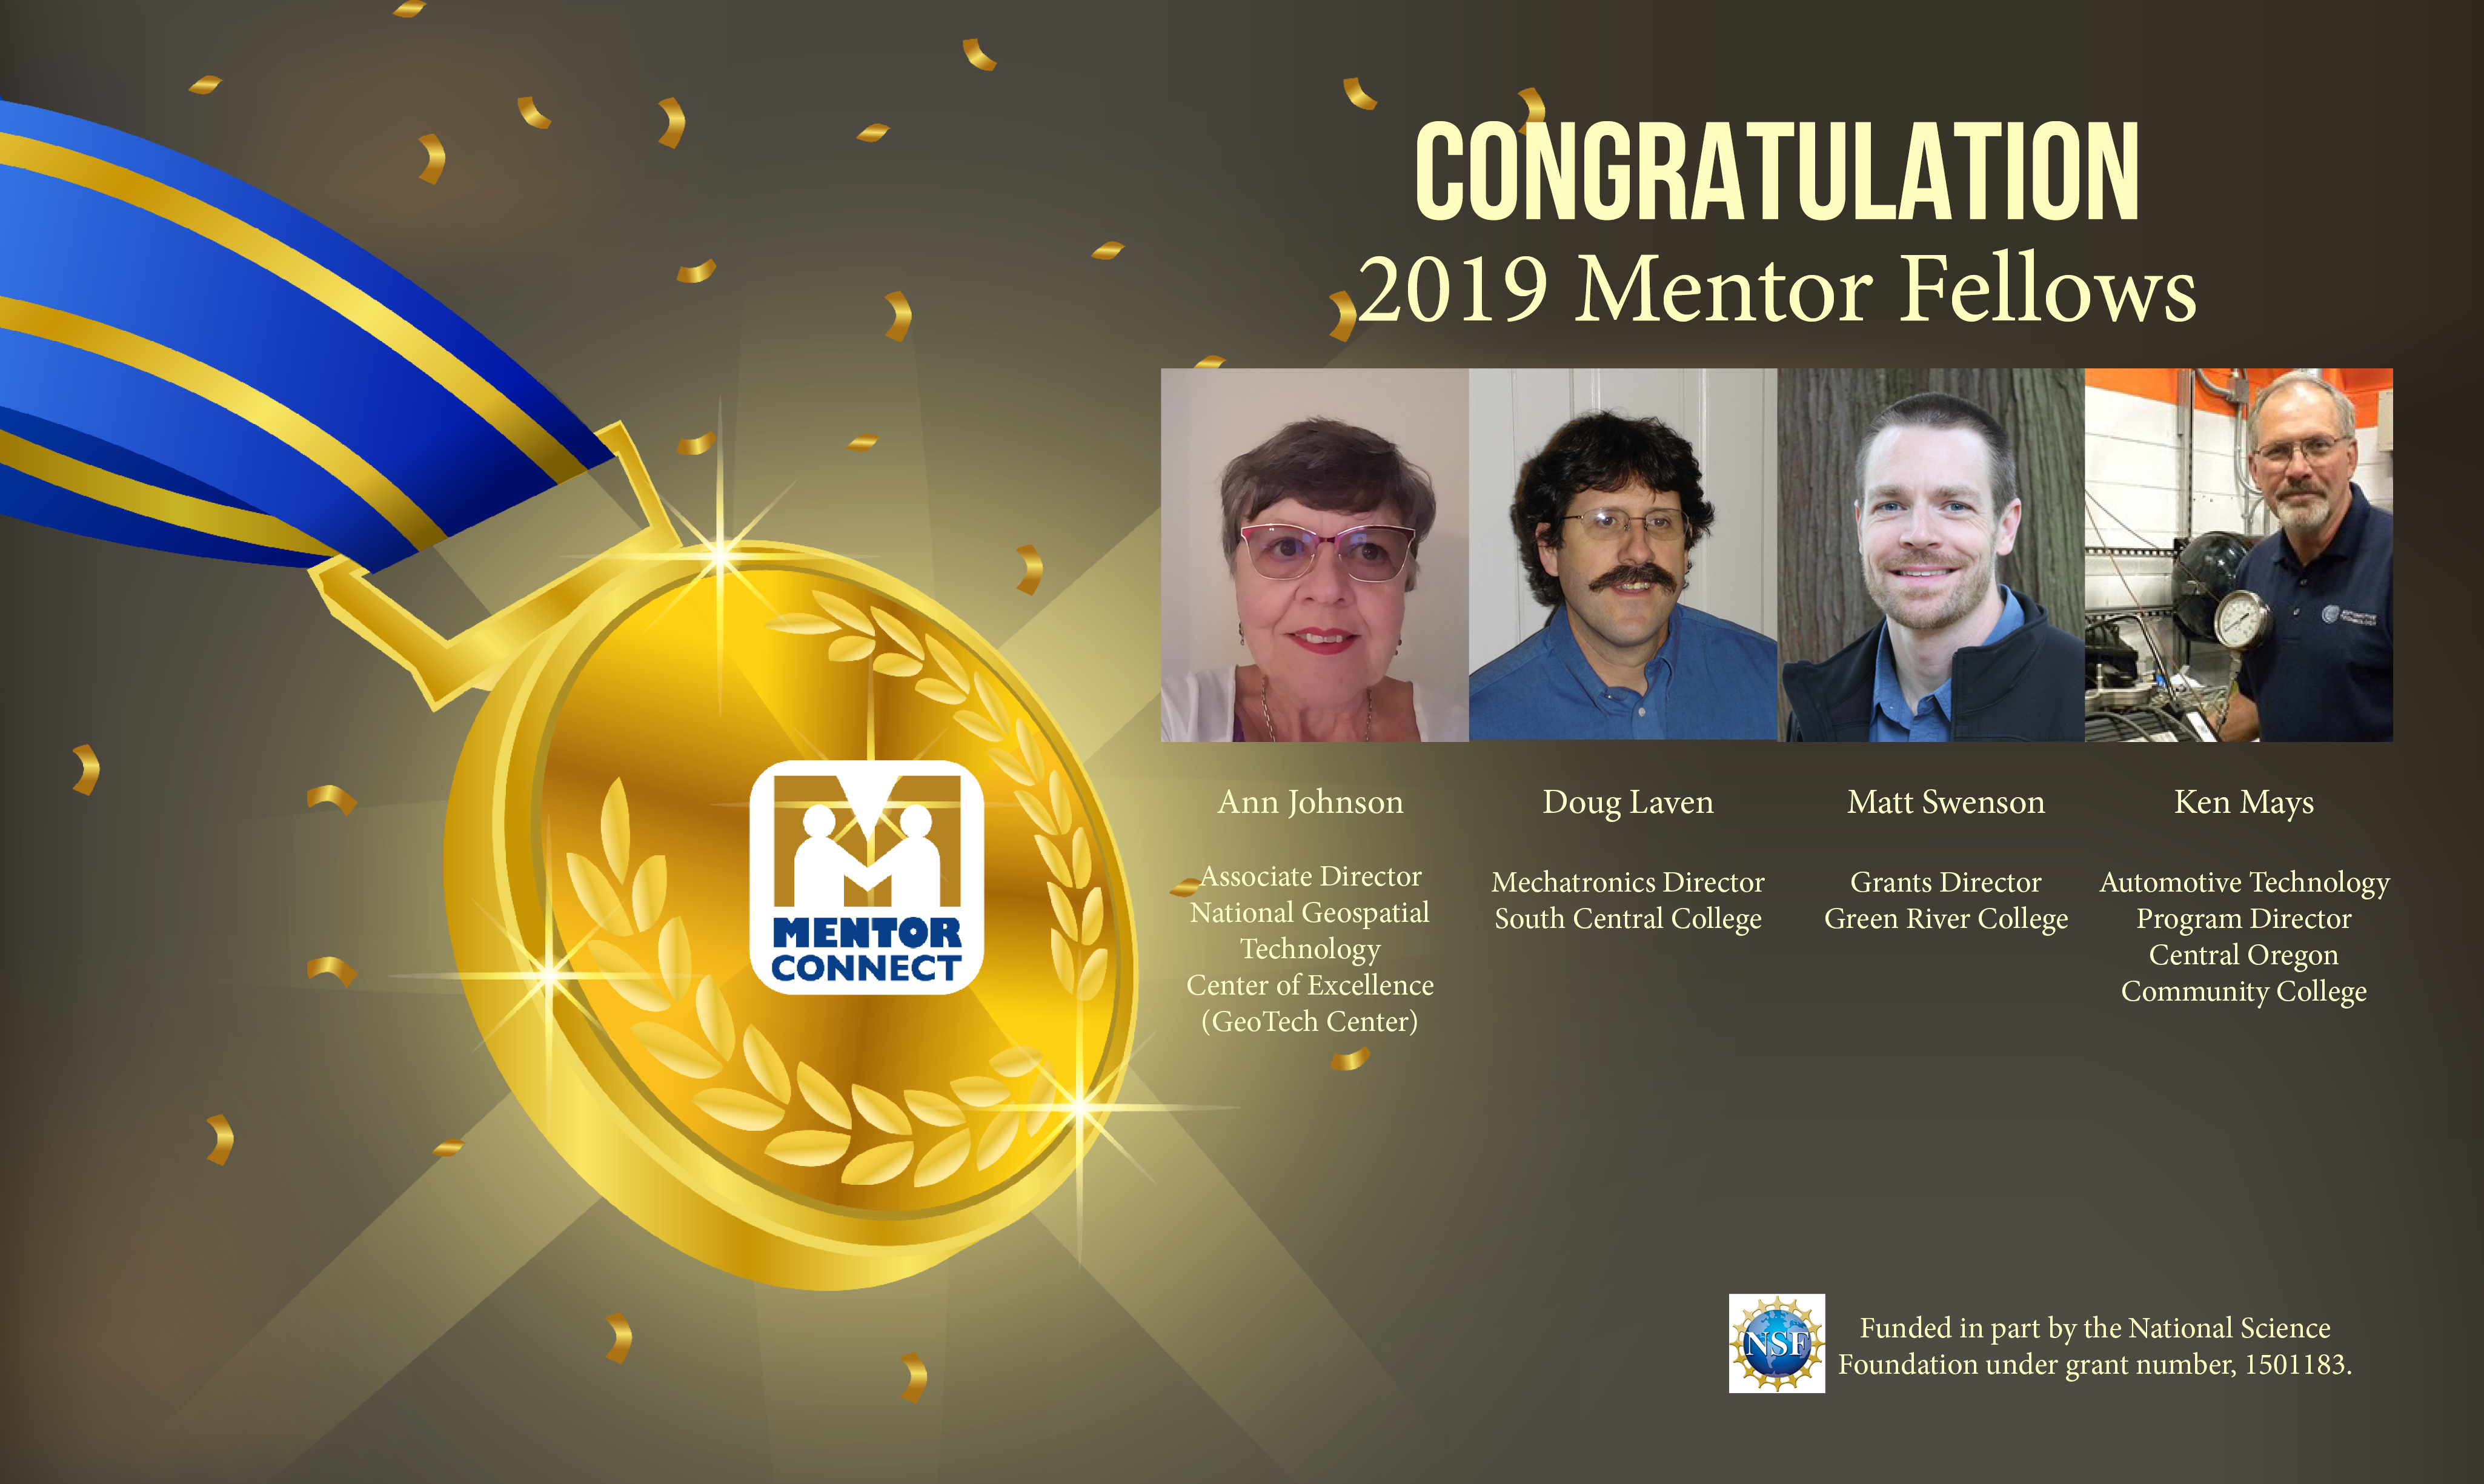 Congratulations to the four selected 2019 Mentor Fellows